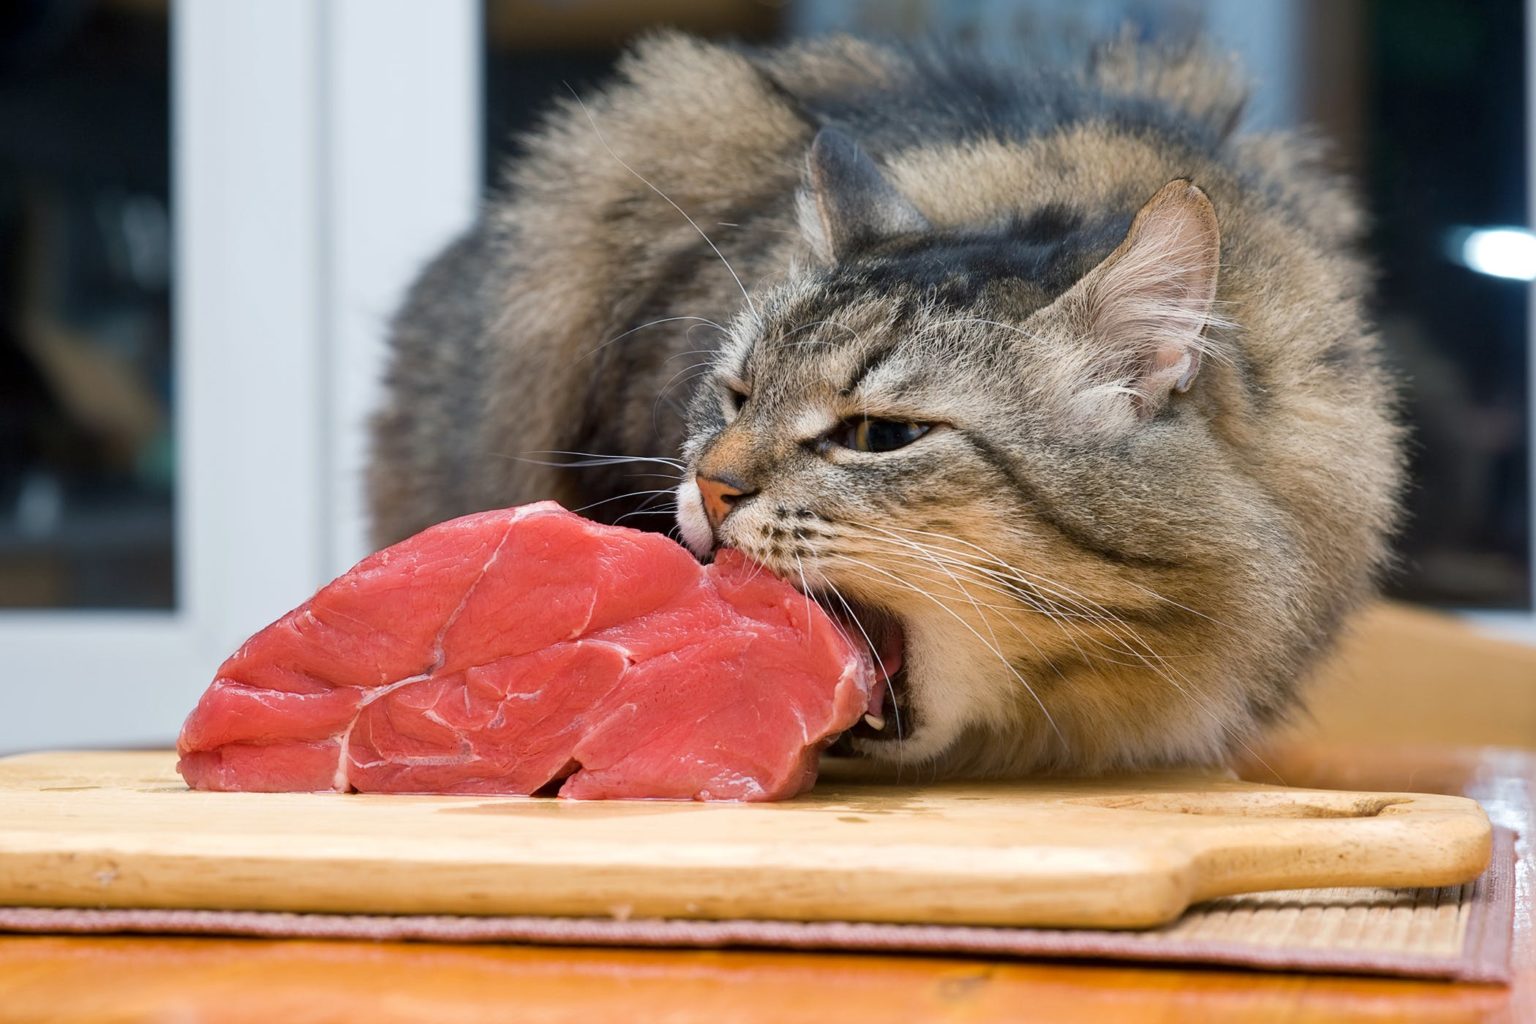 mutfak tegahındaki eti yemeye çalışan kedi